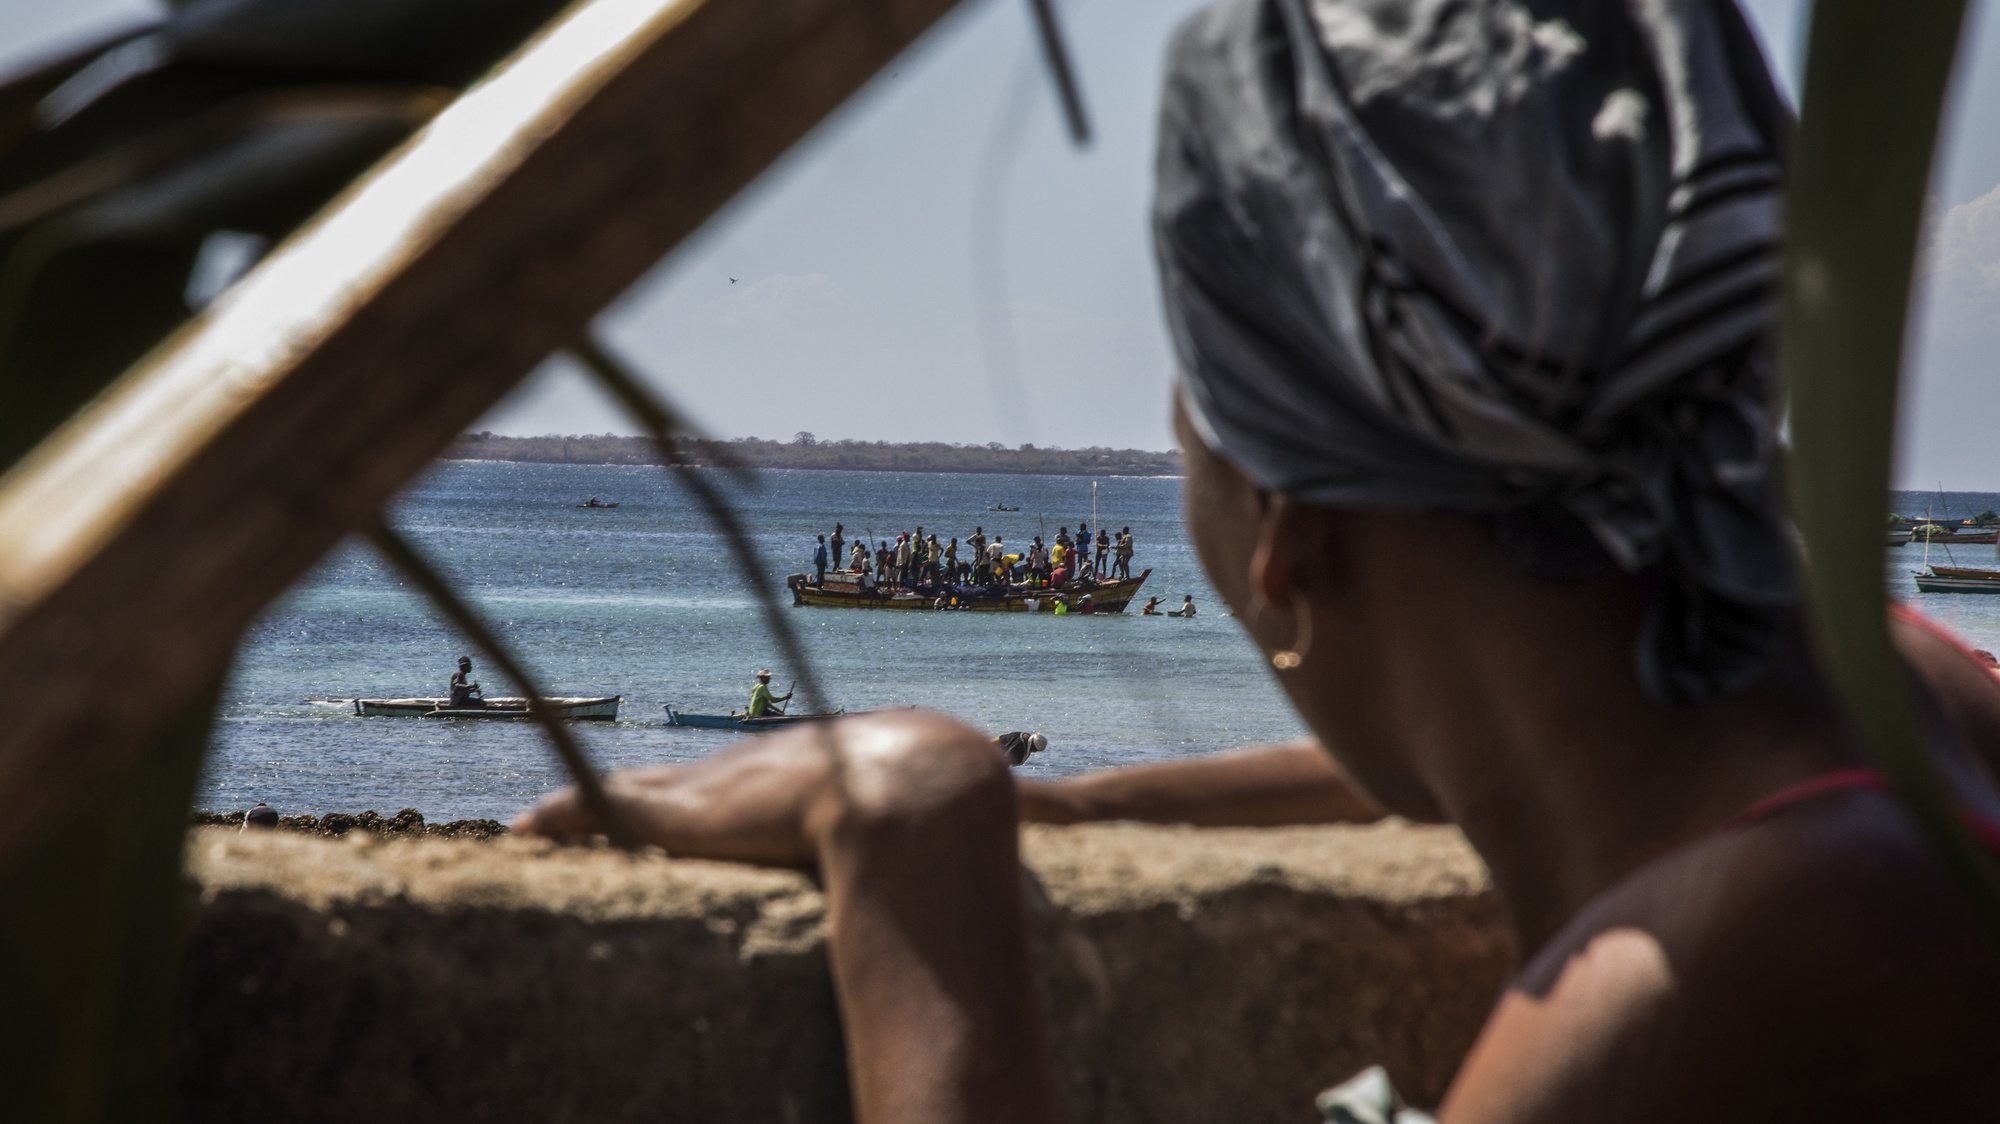 Passageiros e carga embarcam na praia dos pescadores do bairro de Paquitequete em Pemba, onde este tem sido um dos principais pontos de chegada de deslocados da violência armada em Cabo Delgado, Pemba, Moçambique, 21 de julho de 2020. Alguns dos ataques são desde há um ano reivindicados pelo grupo &#039;jihadista&#039; Estado Islâmico e a ameaça terrorista é reconhecida dentro e fora do país, tendo os grupos de rebeldes ocupado importantes vilas de Cabo Delgado (situadas a mais de 100 quilómetros da capital, Pemba) durante dias seguidos, antes de saírem sob fogo das Forças de Defesa e Segurança moçambicanas. RICARDO FRANCO/LUSA